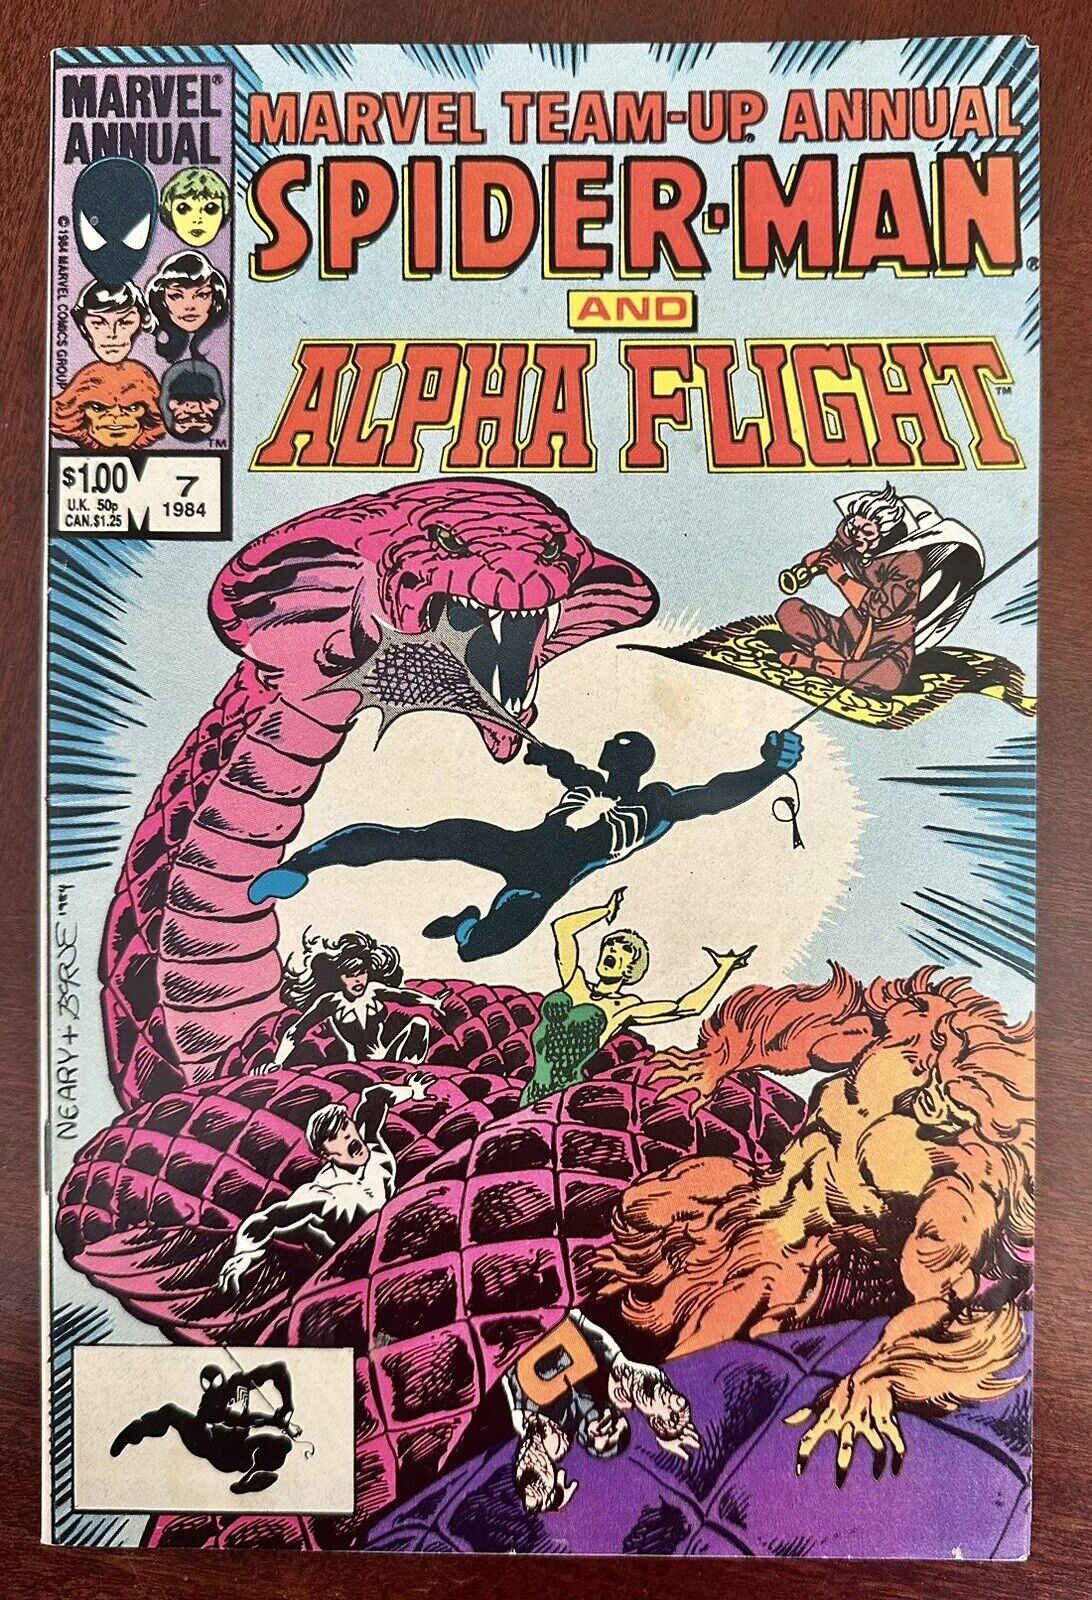 #7 Marvel Team-Up Annual Spider-Man and Alpha Flight (1984)